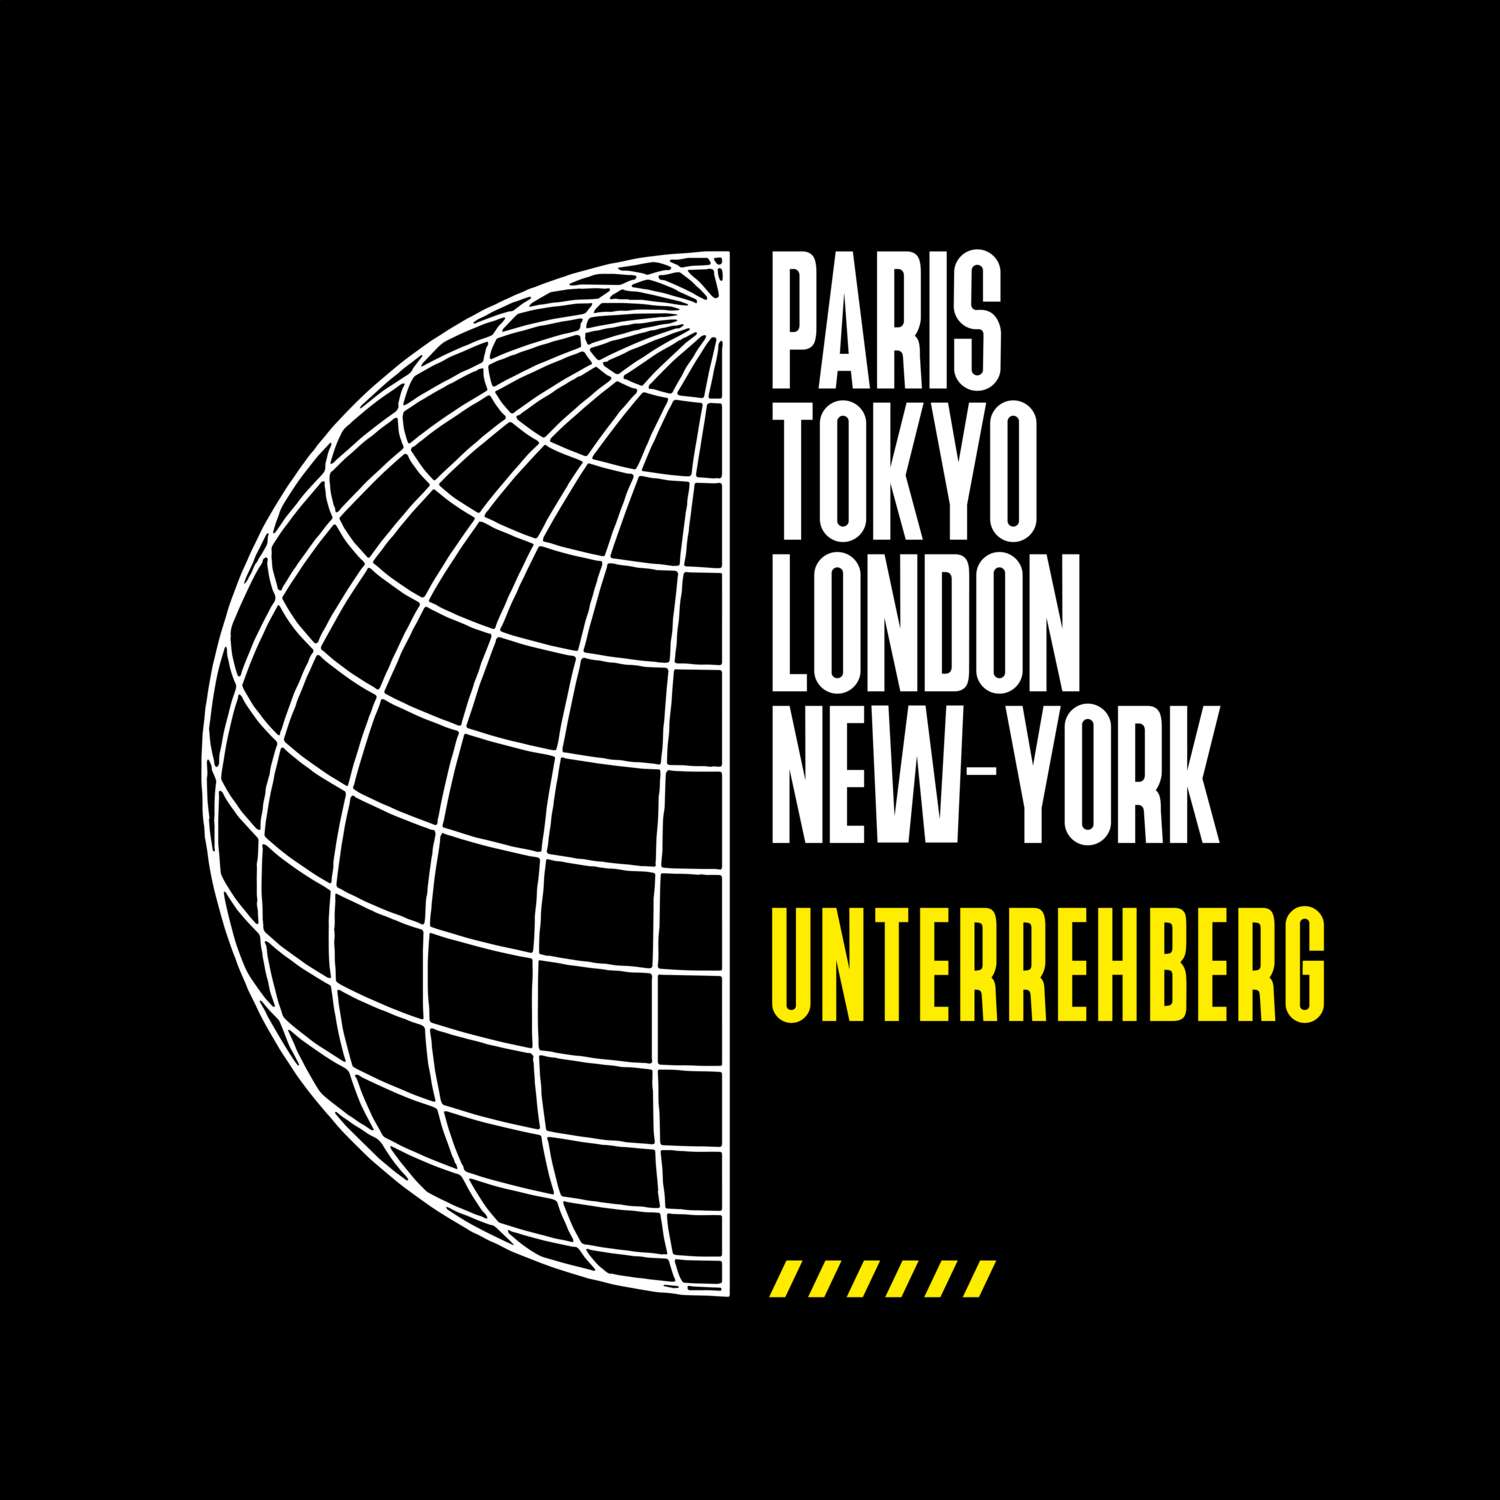 Unterrehberg T-Shirt »Paris Tokyo London«